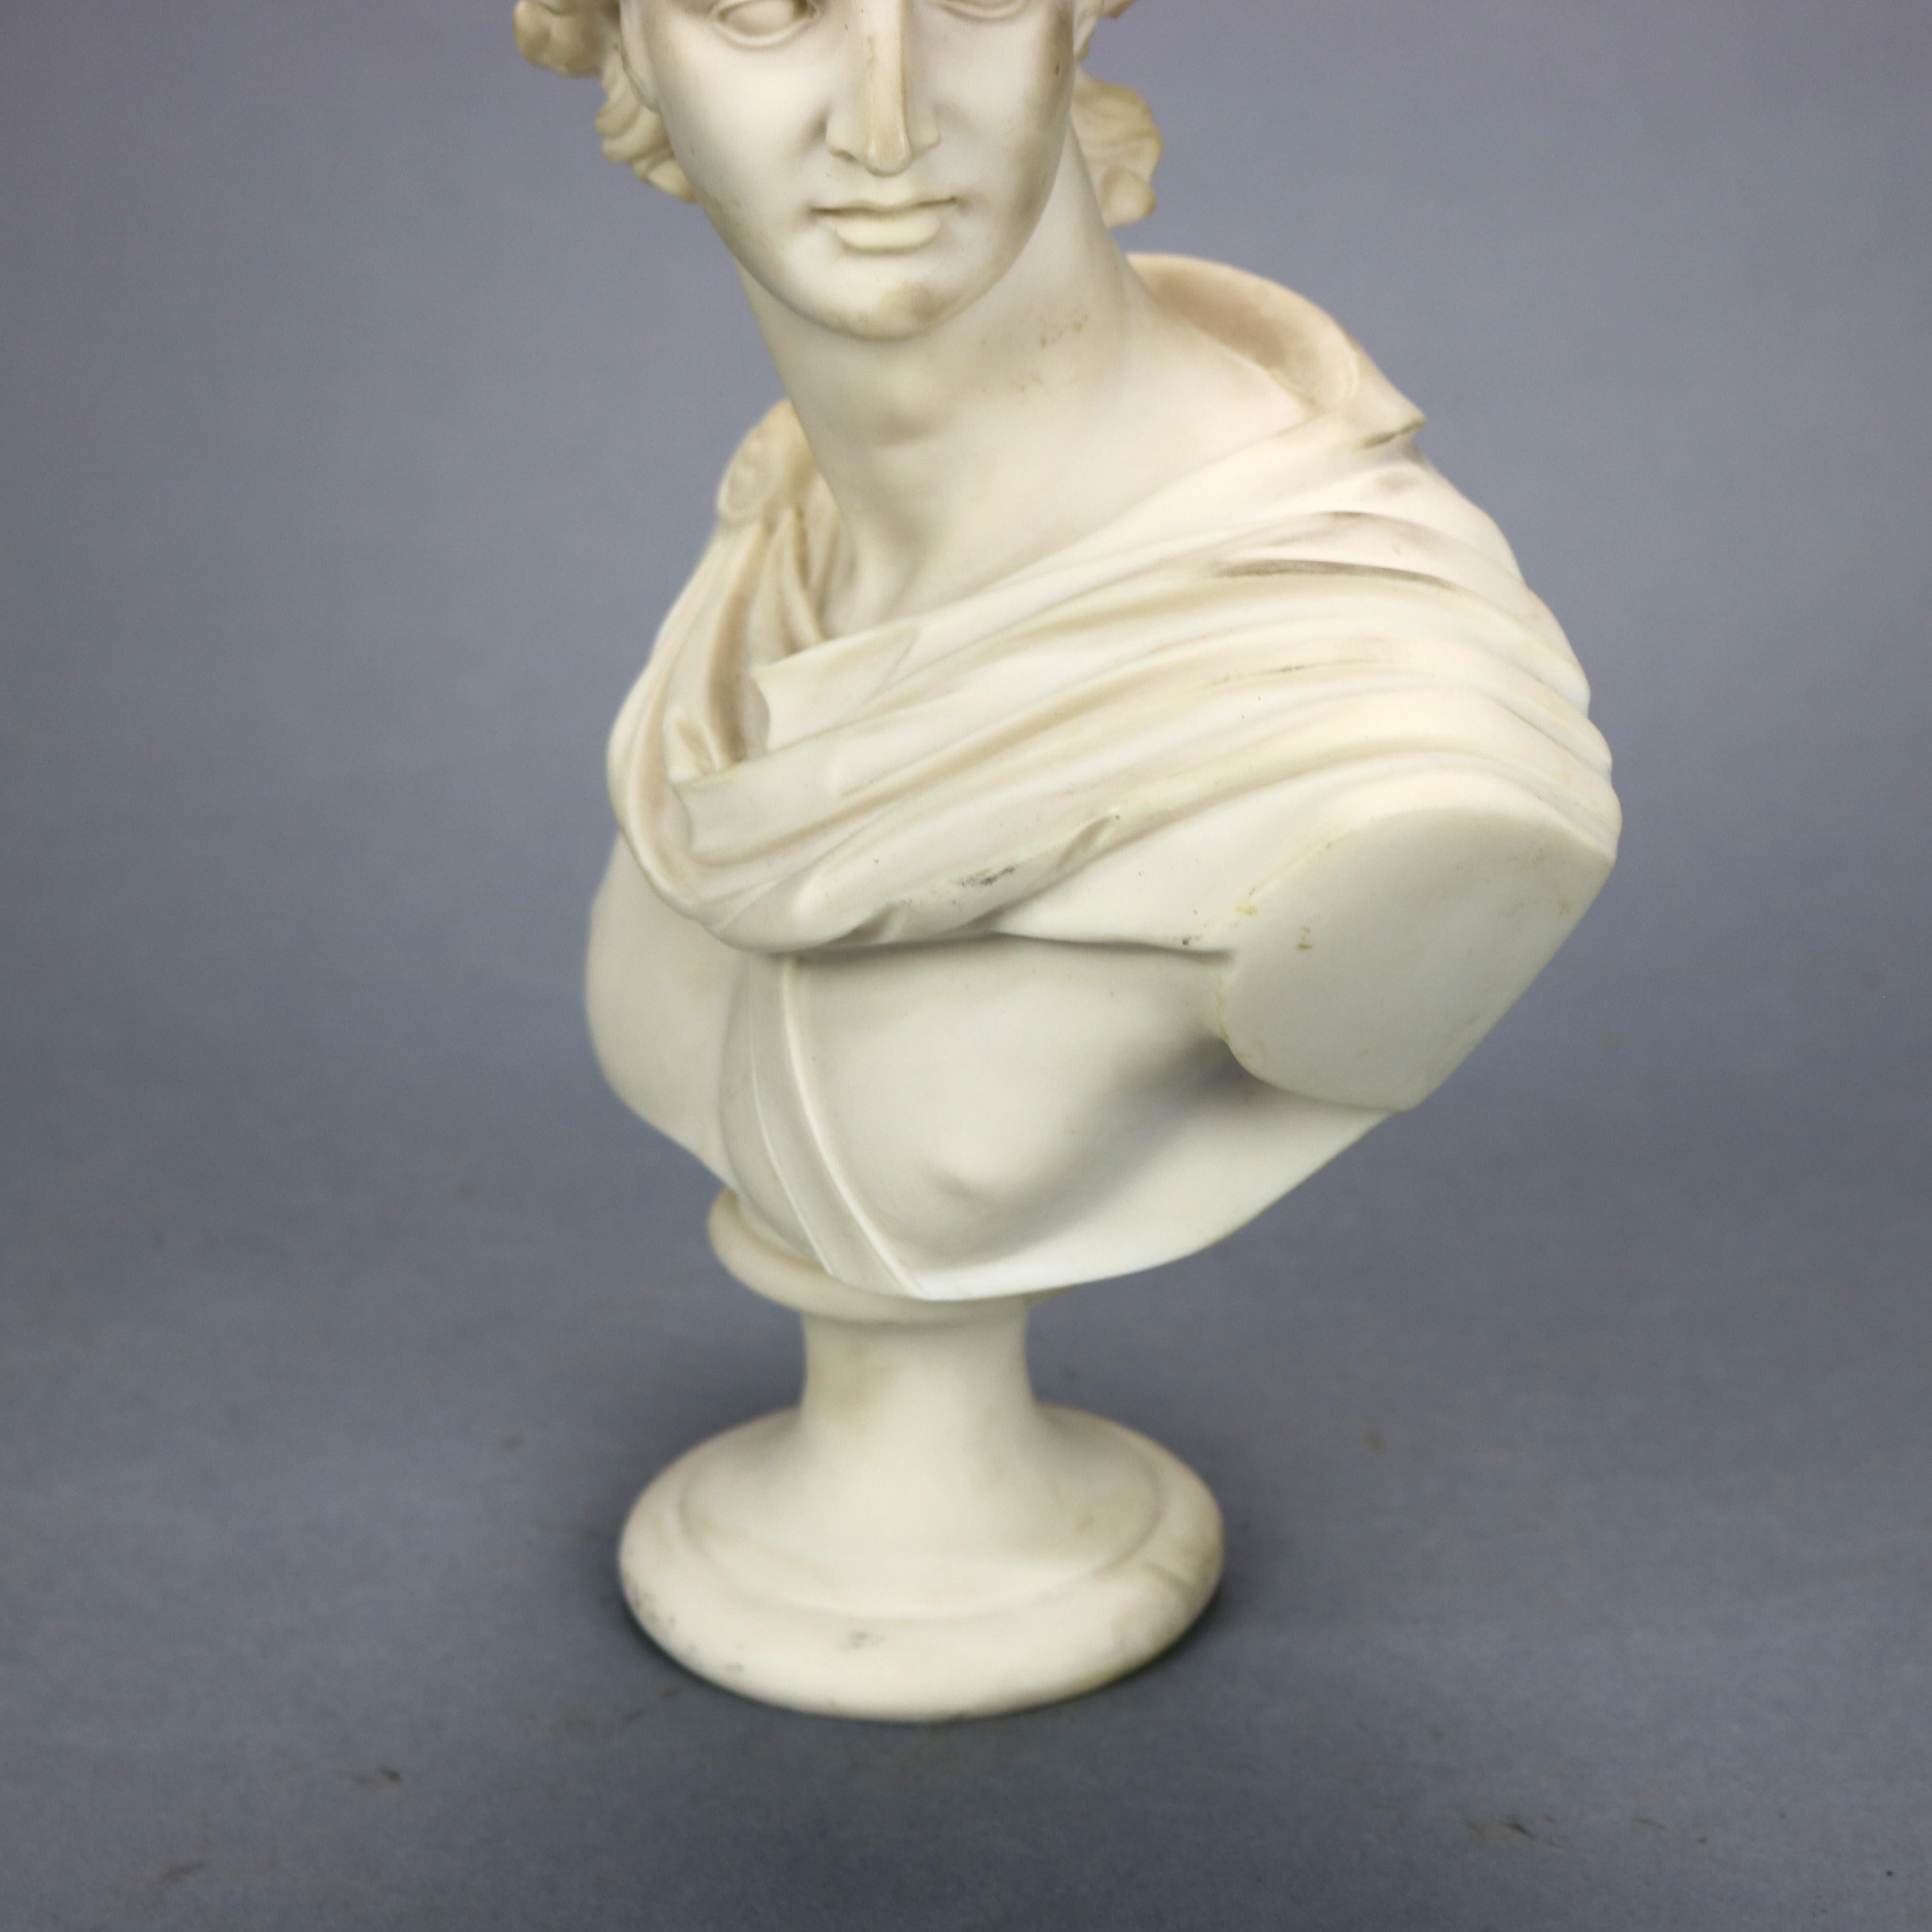 20th Century Italian Carved Alabaster Classical Roman Portrait Sculpture of Caesar, 20th C